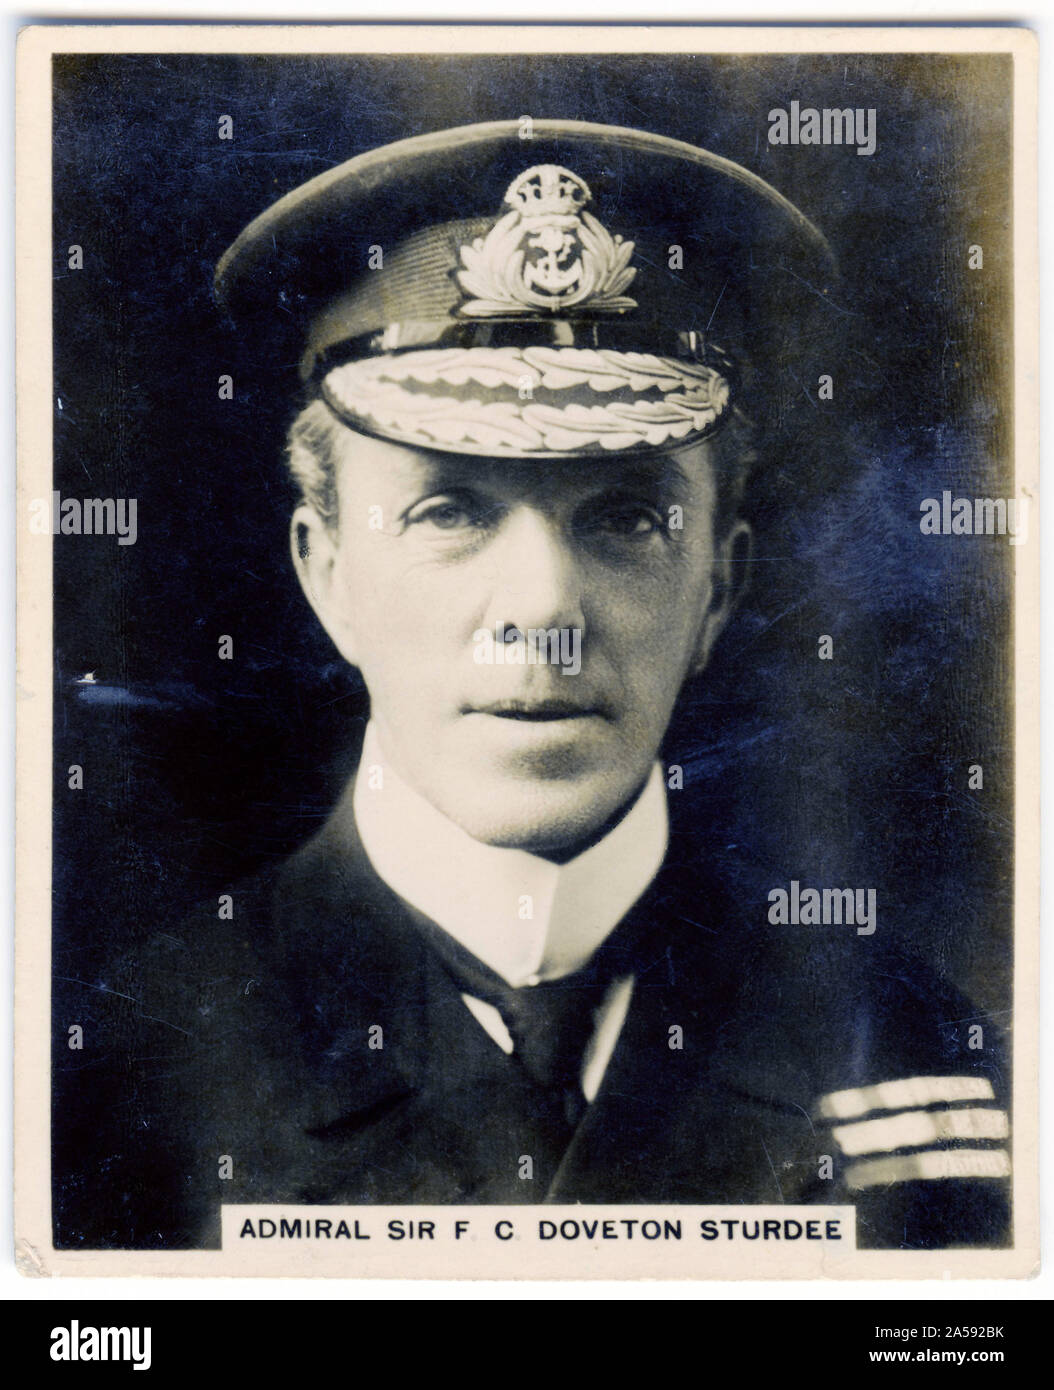 Tarjeta de cigarrillos retrato del Almirante de la flota, Sir Frederick Charles Doveton Sturdee, 1º Baronet GCB, KCMG, CVO (1859 - 1925). Después de la formación como un torpedo officer, mandó dos cruceros diferentes y, a continuación, tres diferentes acorazados antes de convertirse en comandante del Primer Escuadrón de batalla de la Home Fleet. Posteriormente comandó la 3ª y 2ª escuadrillas de cruceros. Foto de stock